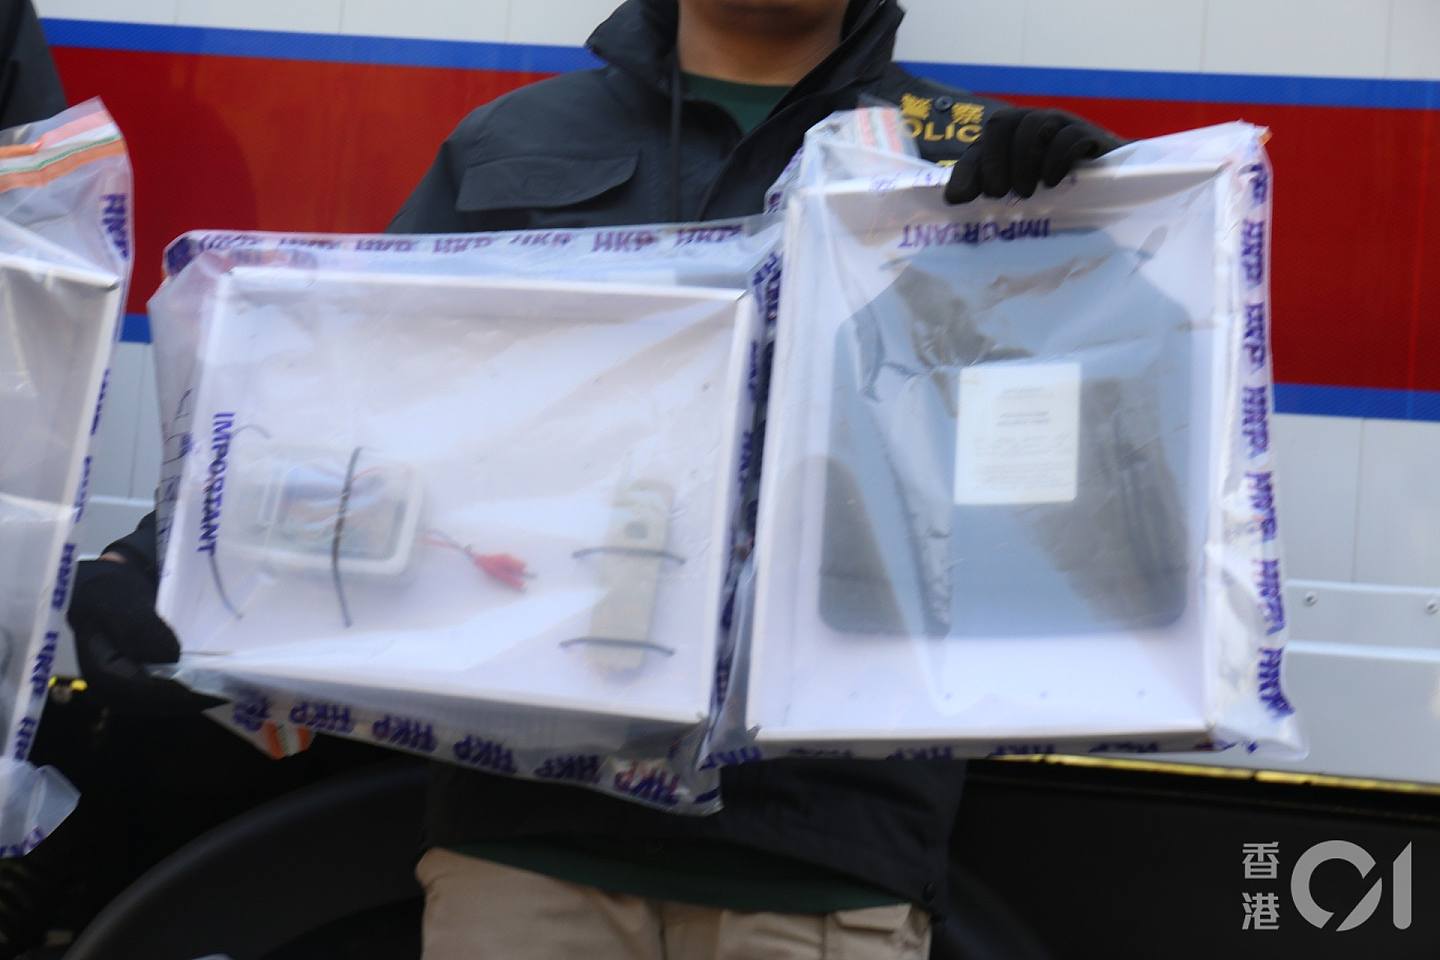 警方展示爆炸装置（左），分别是一个遥控及以胶盒装起的电线、电路板。 （陈浩然摄）